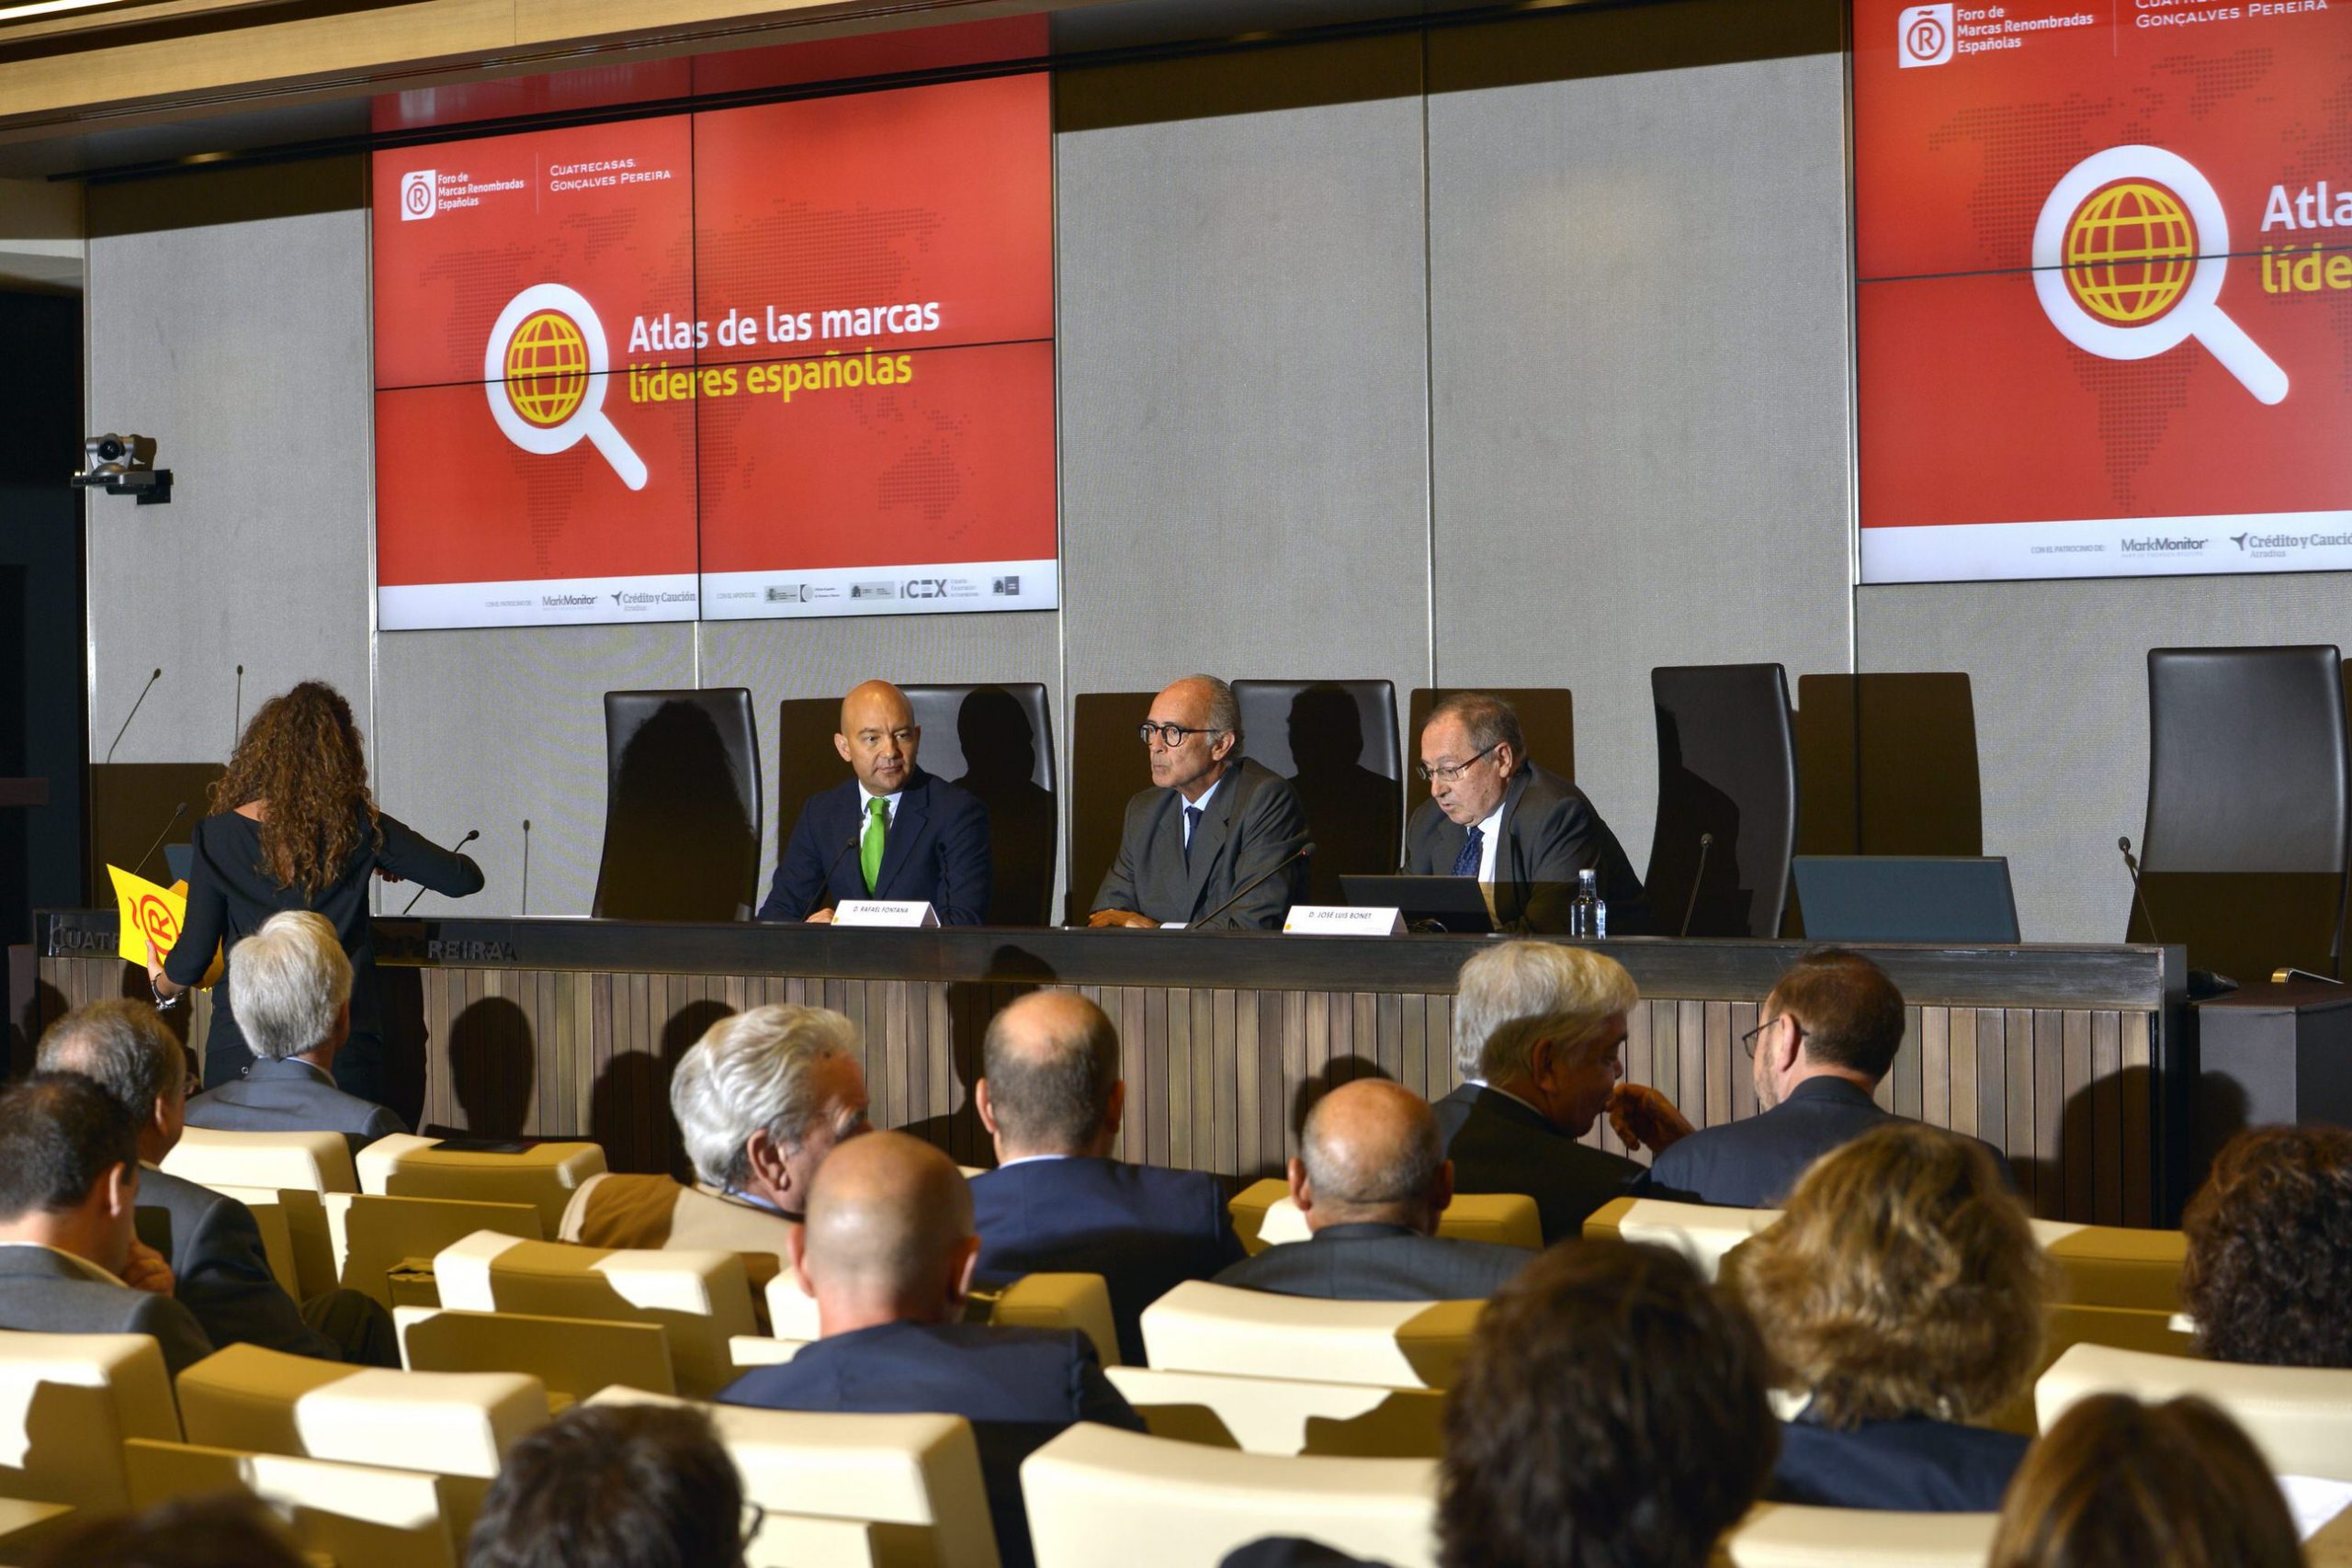 Asamblea General y presentación del Atlas de las marcas líderes españolas 2015 – Madrid